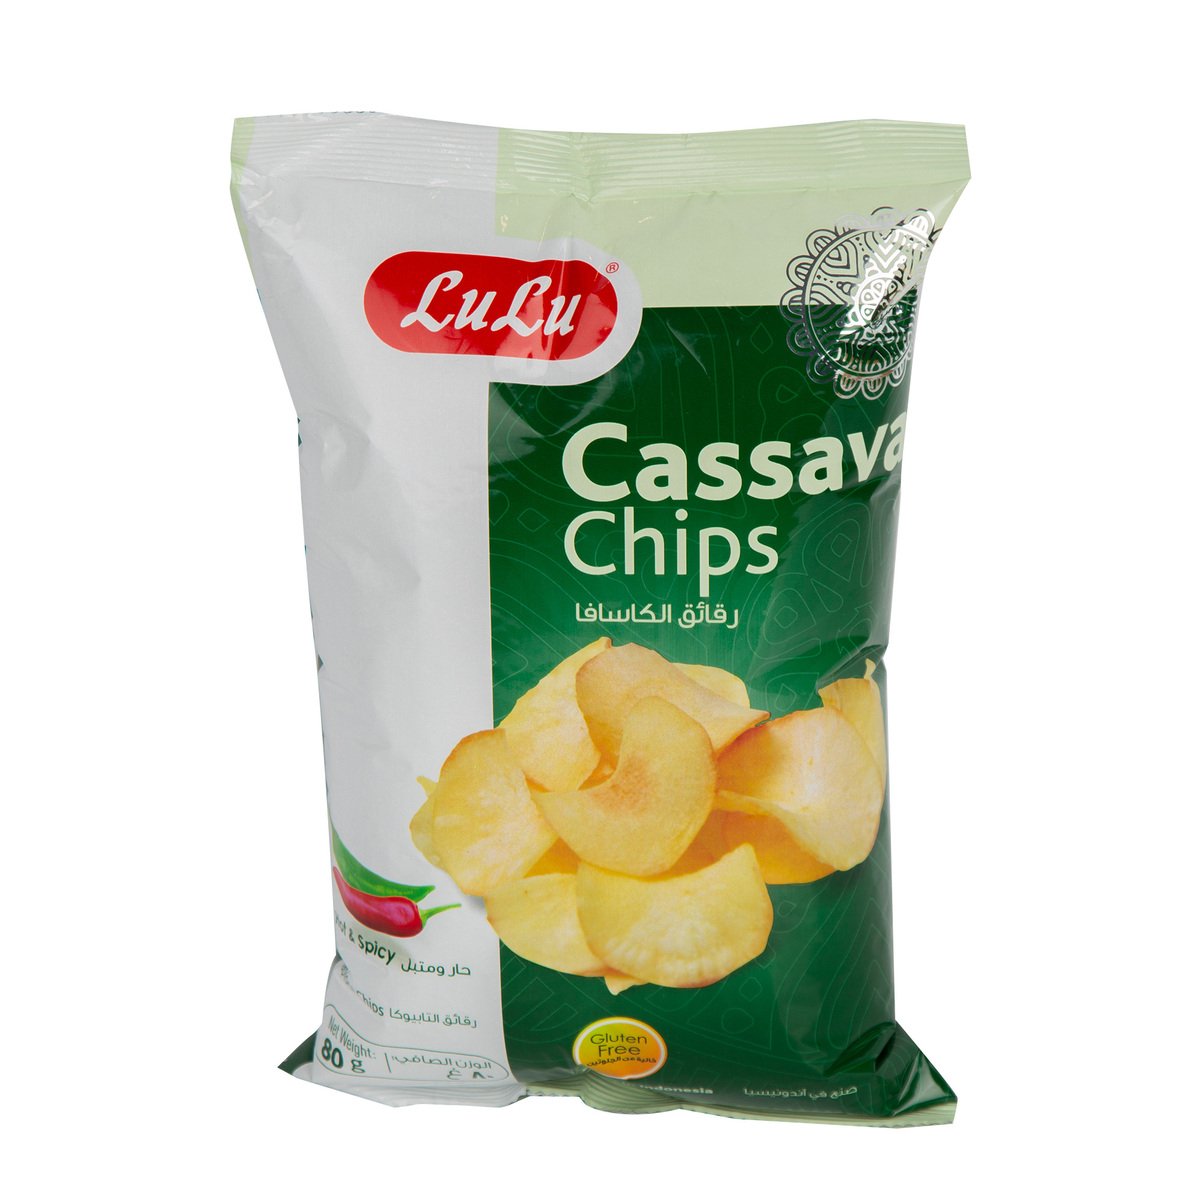 LuLu Cassava Chips Hot & Spicy 80 g